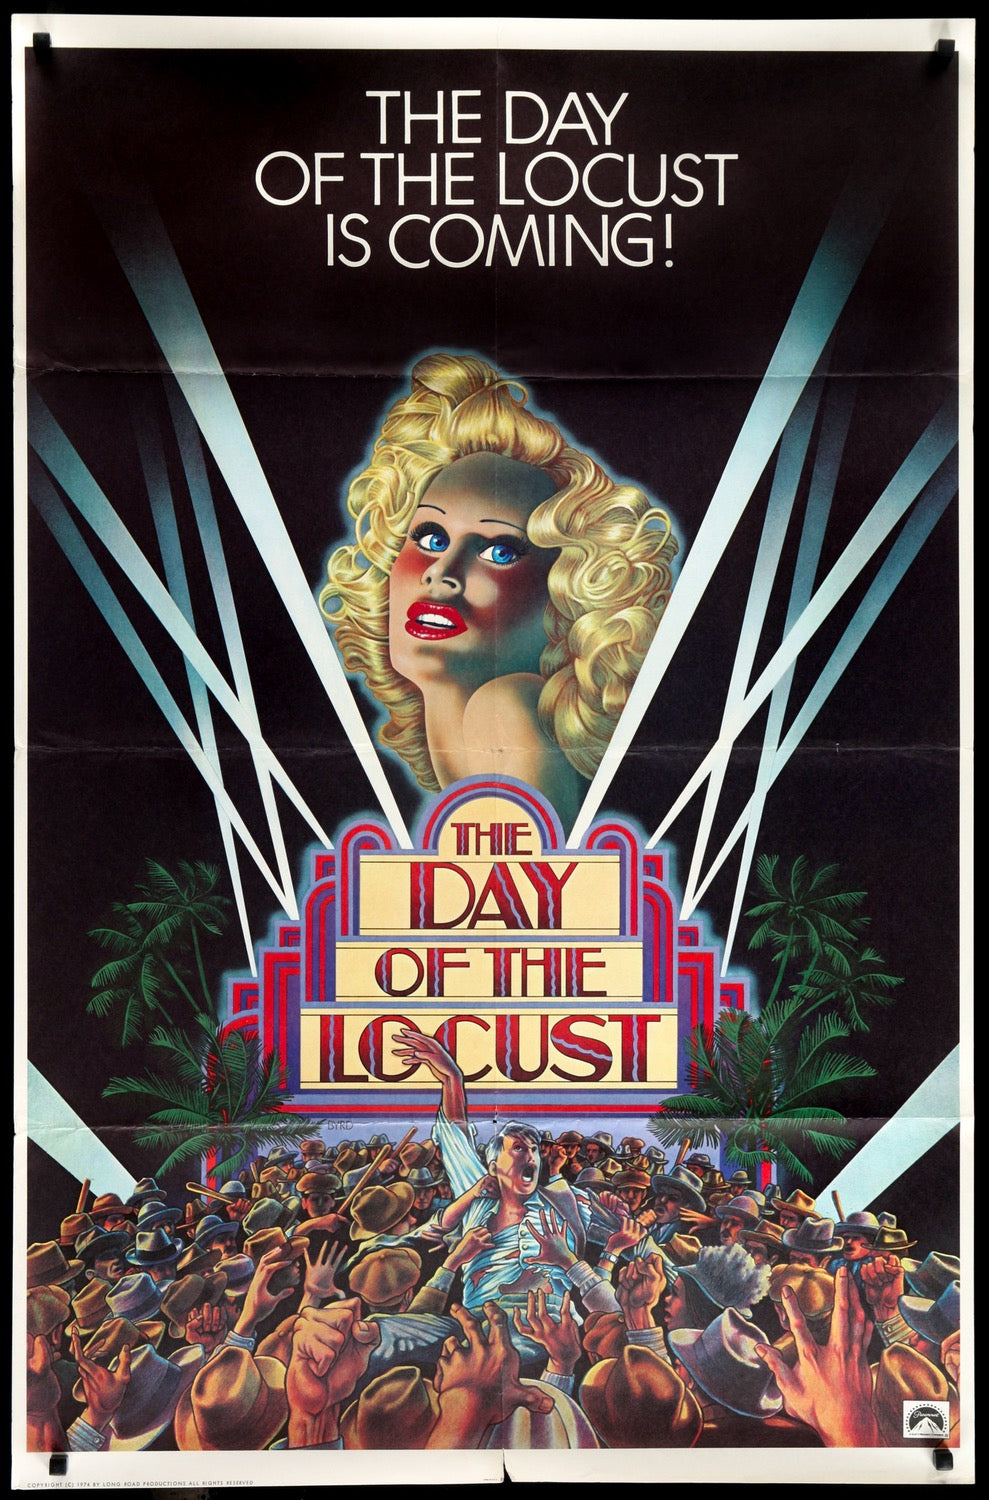 Day of the Locust (1975) original movie poster for sale at Original Film Art